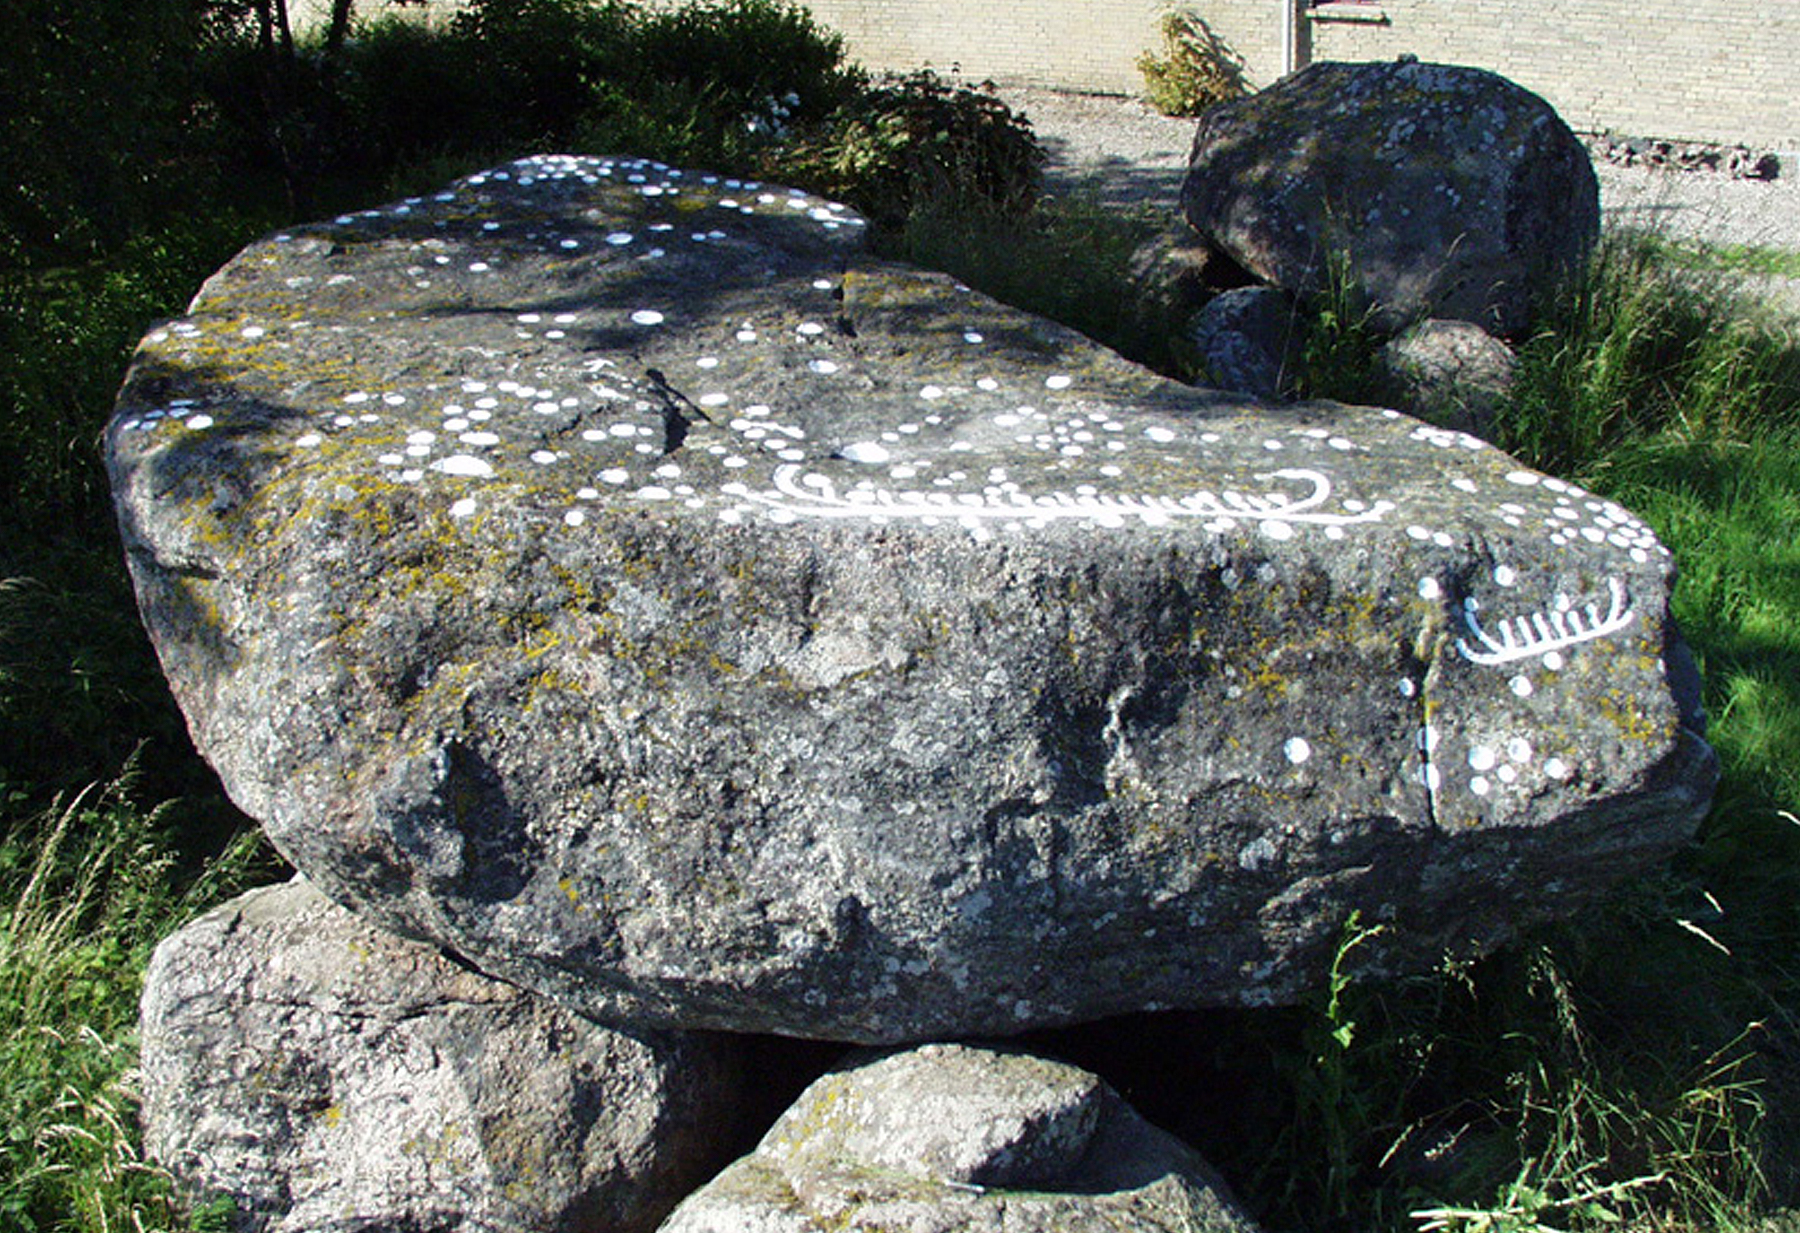 Kirke Stillinge Denmark Rock Art Petroglyphs Tanum Rock Art Museum Sweden